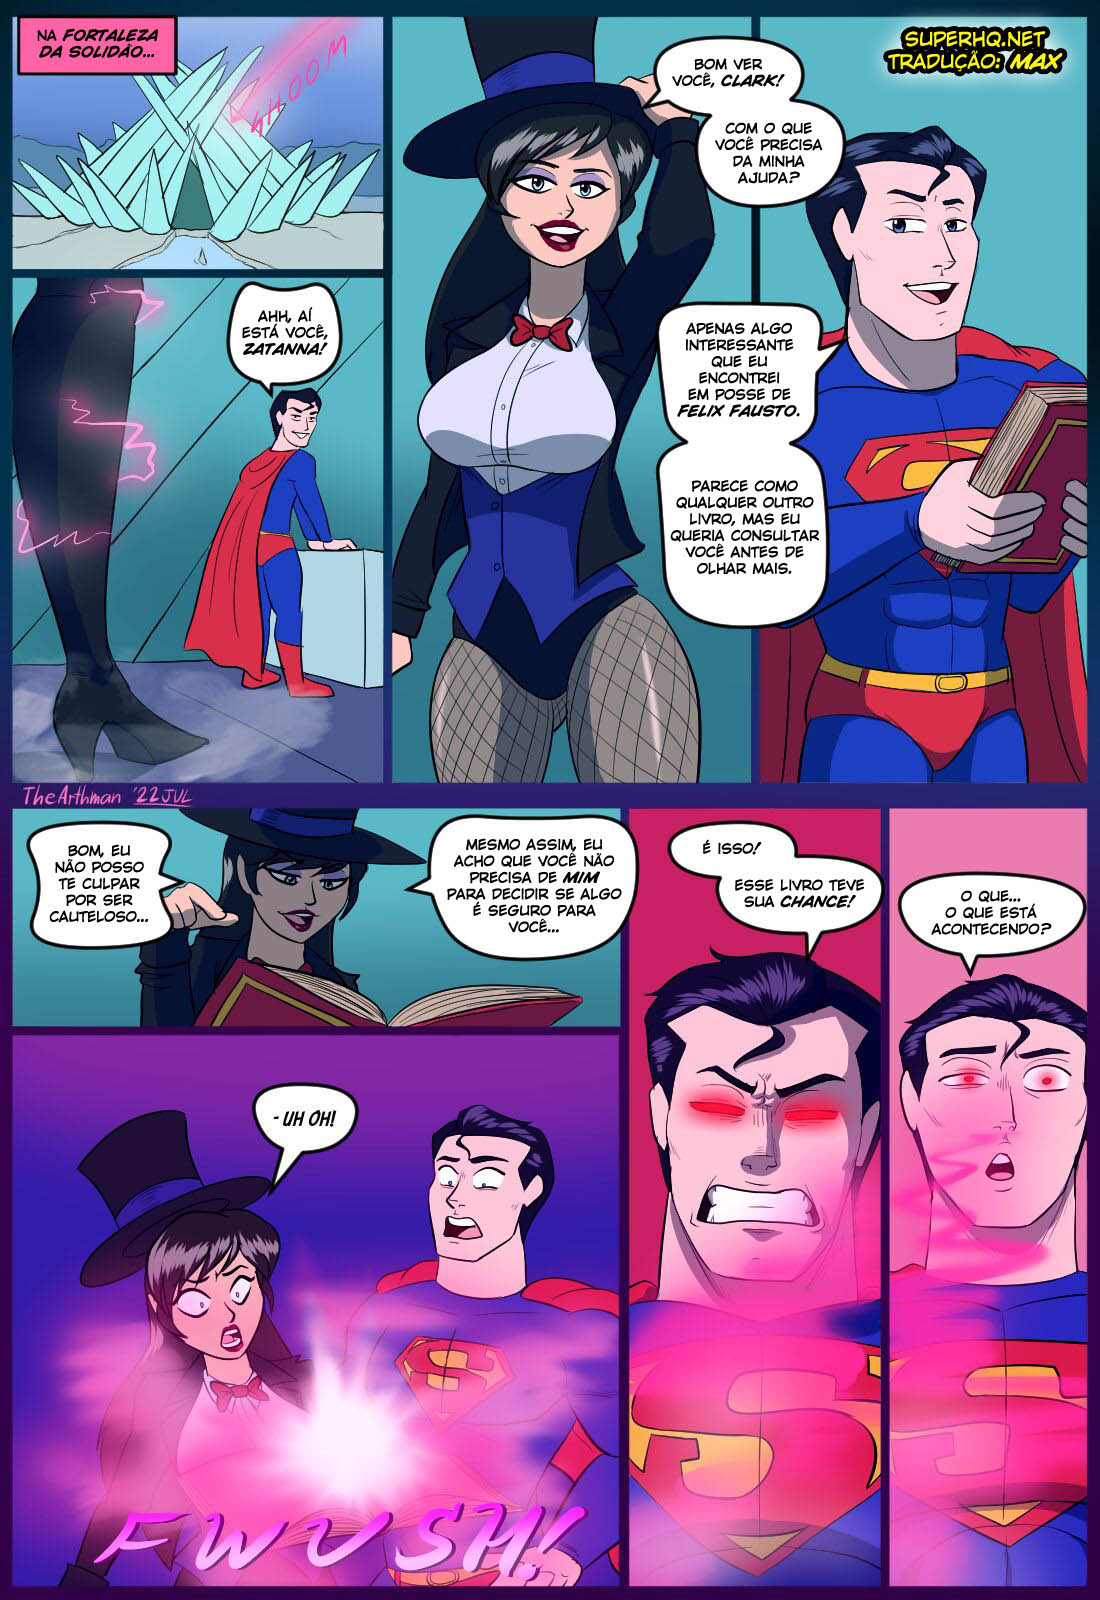 Superboy Porno - Sexo intenso com a Zatanna